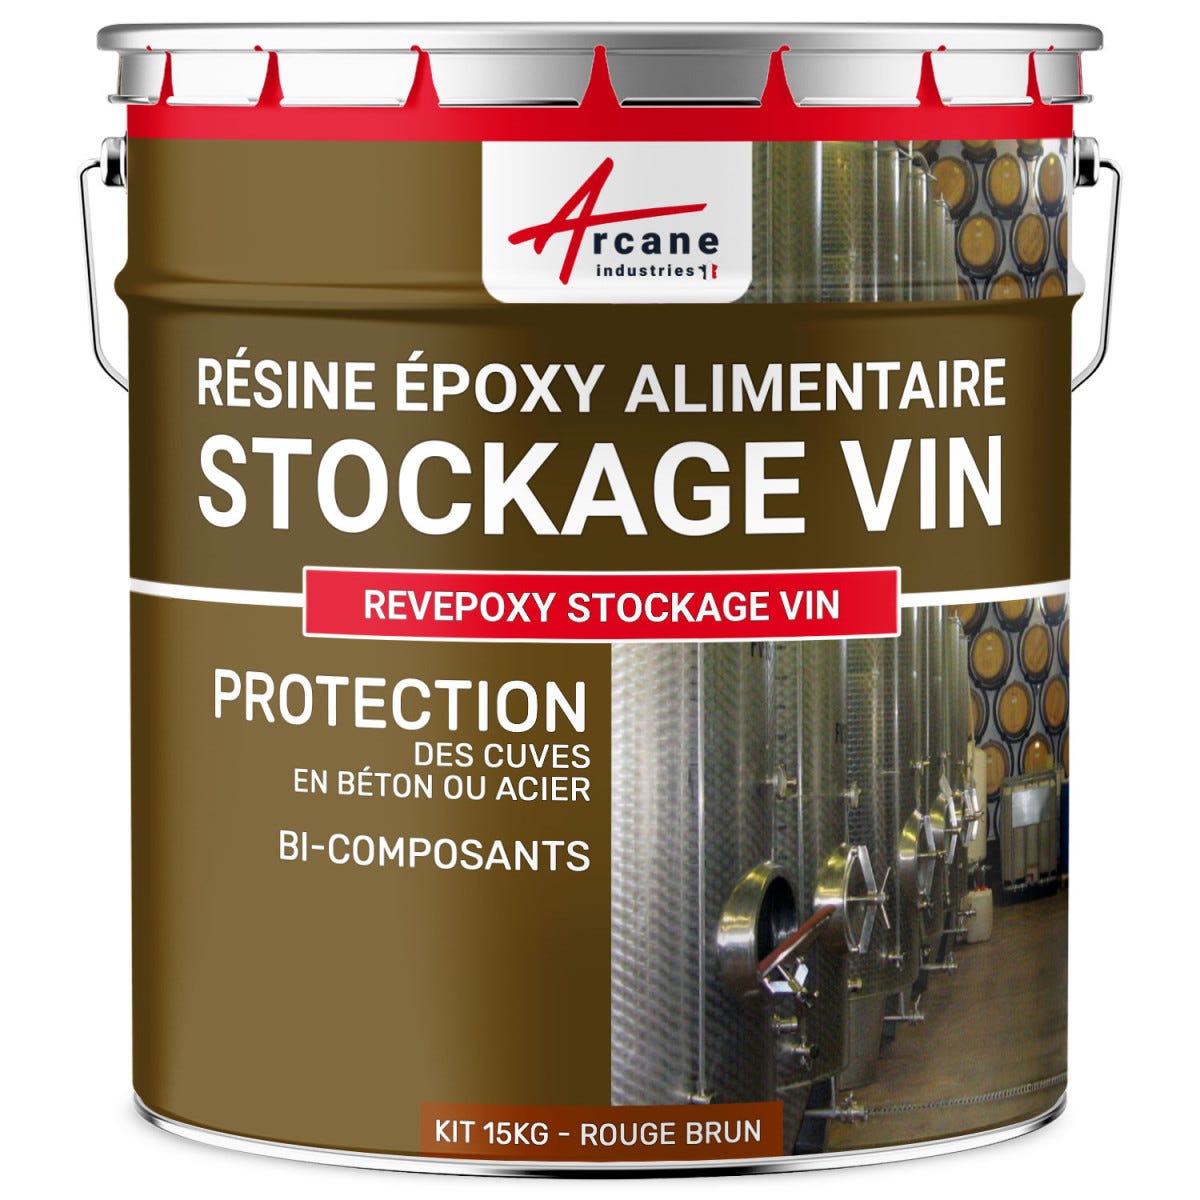 Resine epoxy pour Cuve a Vin - REVEPOXY STOCKAGE VIN - 15 kg - Rouge Brun - Ral 3011 - ARCANE INDUSTRIES 5